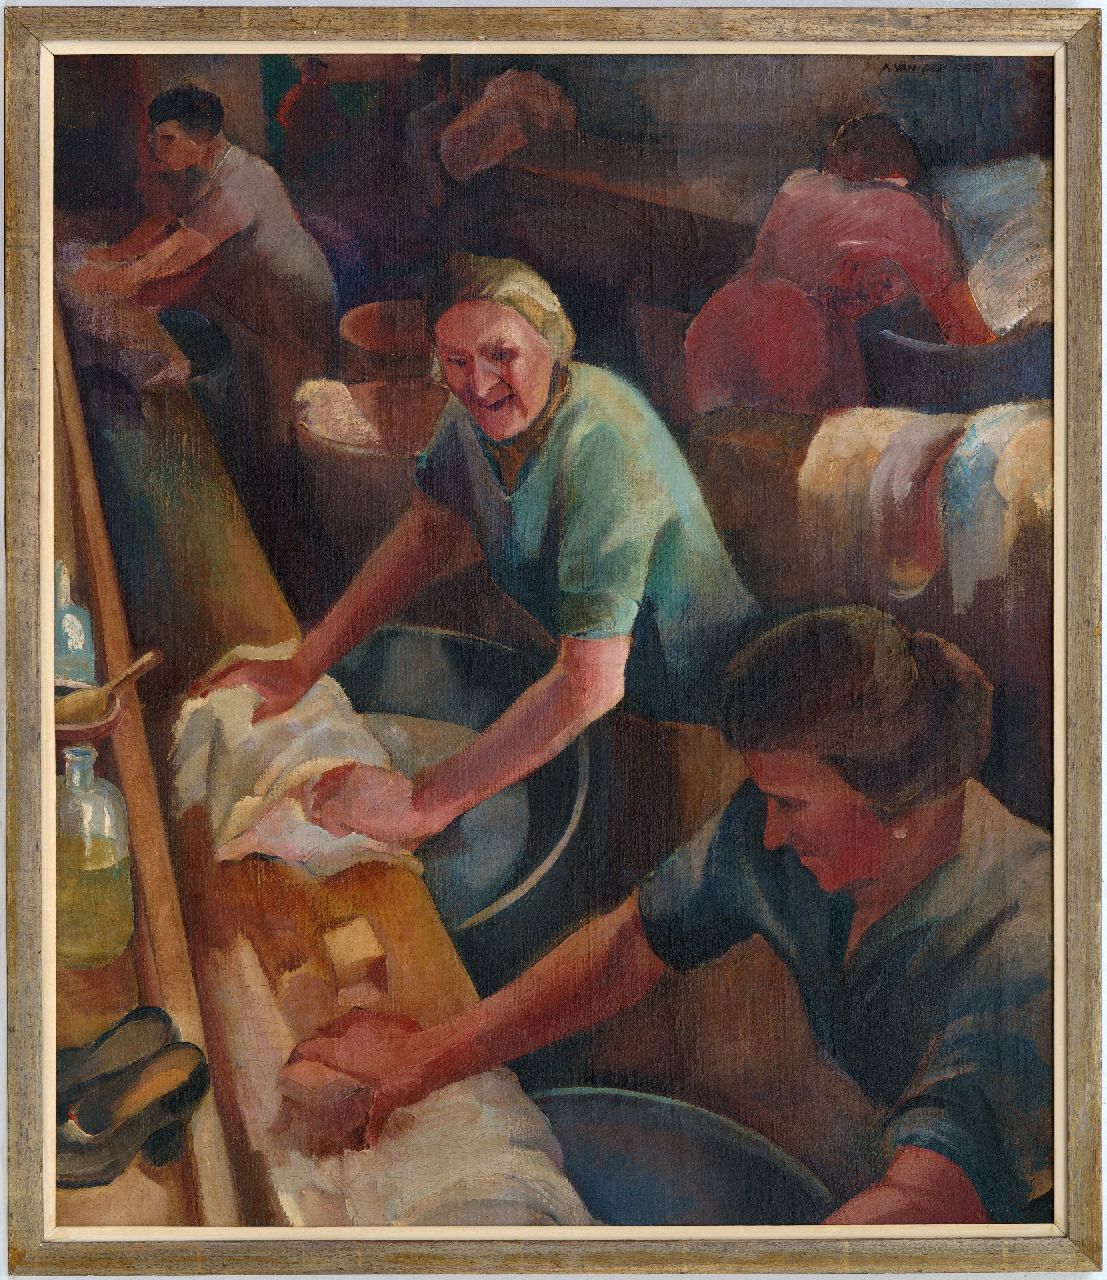 Feer A. van der | Anna 'Anneke' van der Feer, Wasvrouwen, olieverf op doek 70,3 x 60,1 cm, gesigneerd rechtsboven